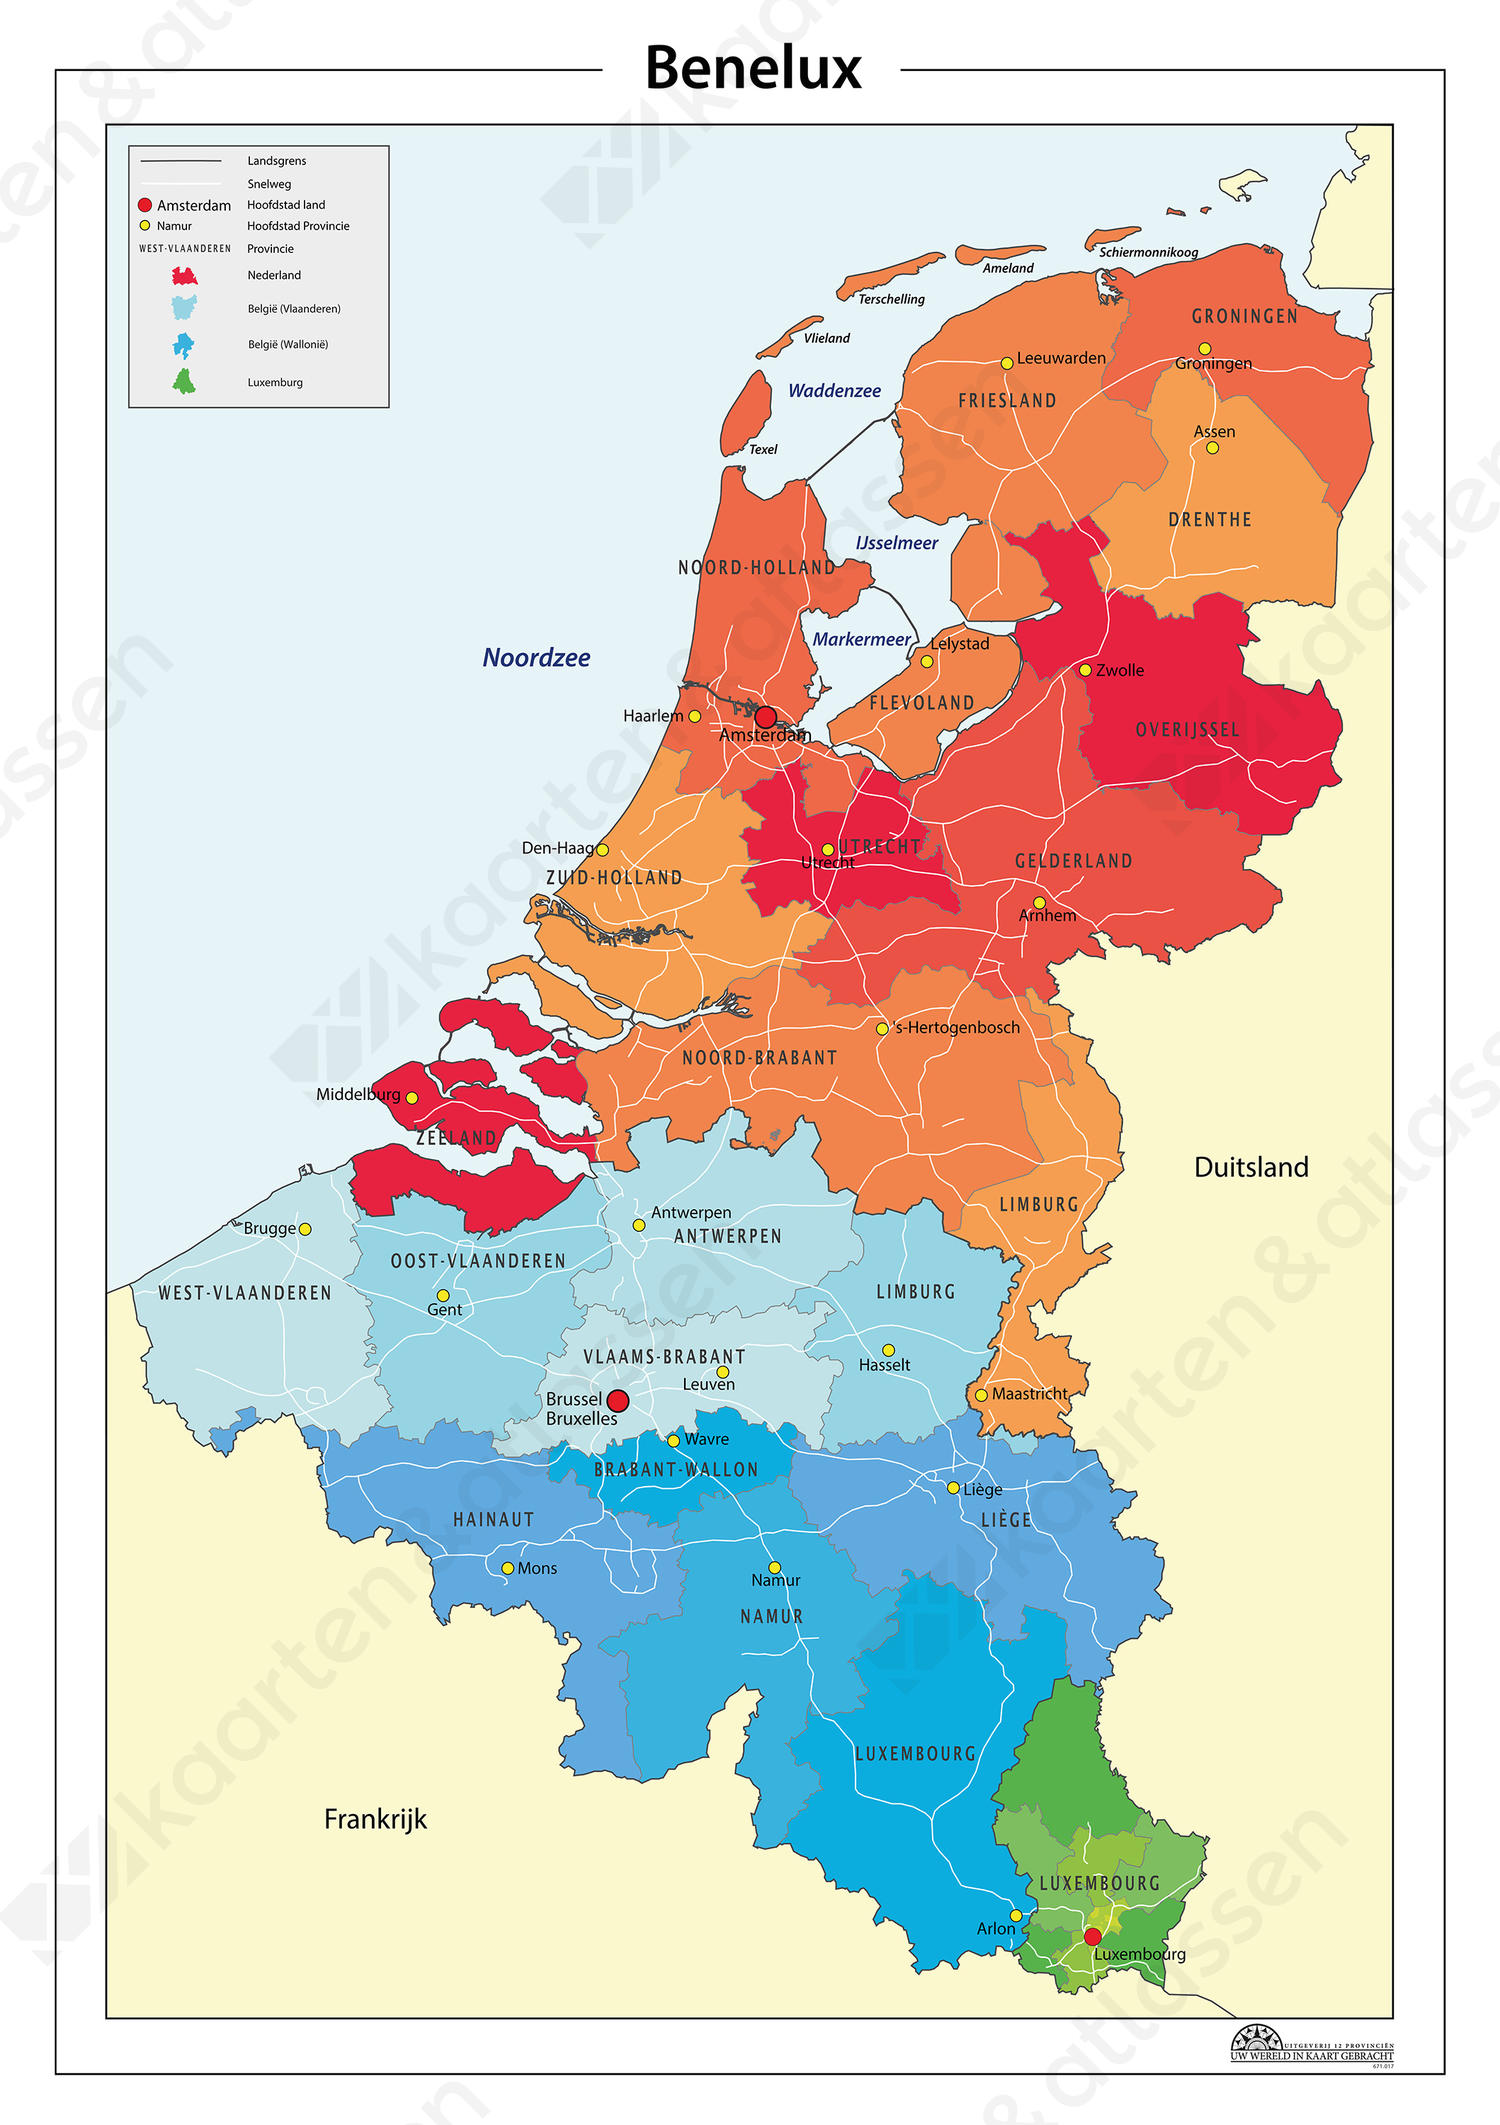 Digitale Eenvoudige Beneluxkaart 